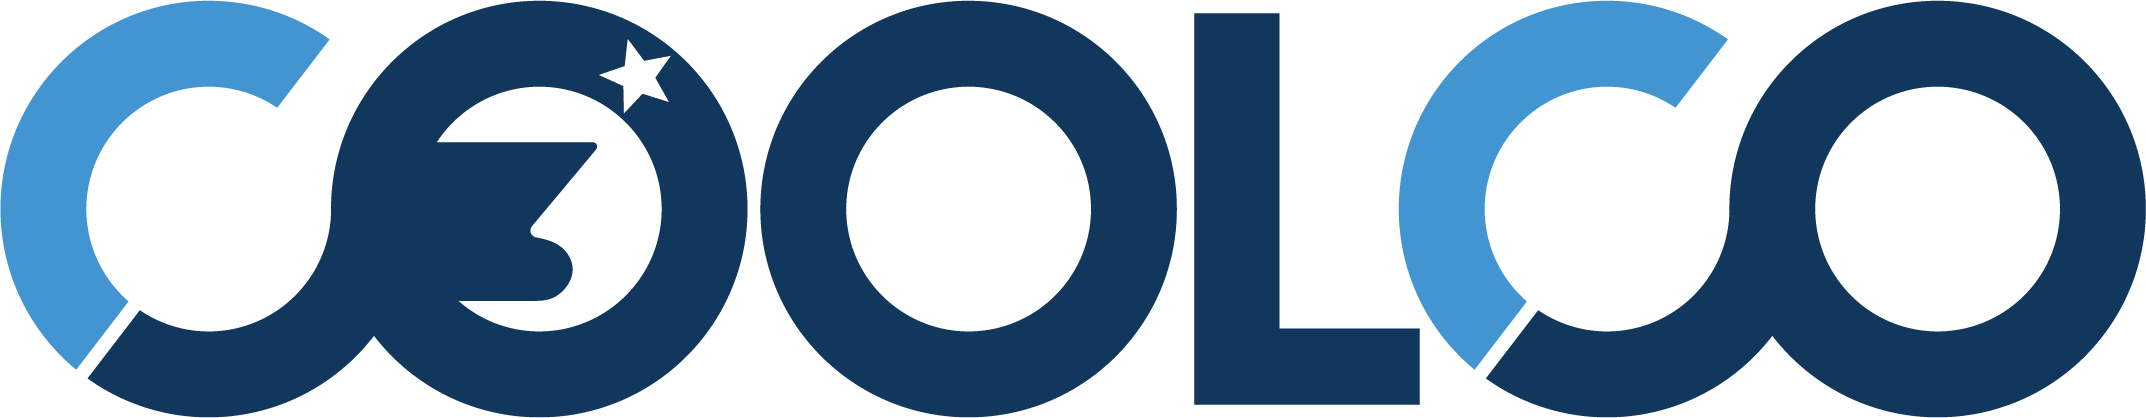 Logo Cool Company Ltd.